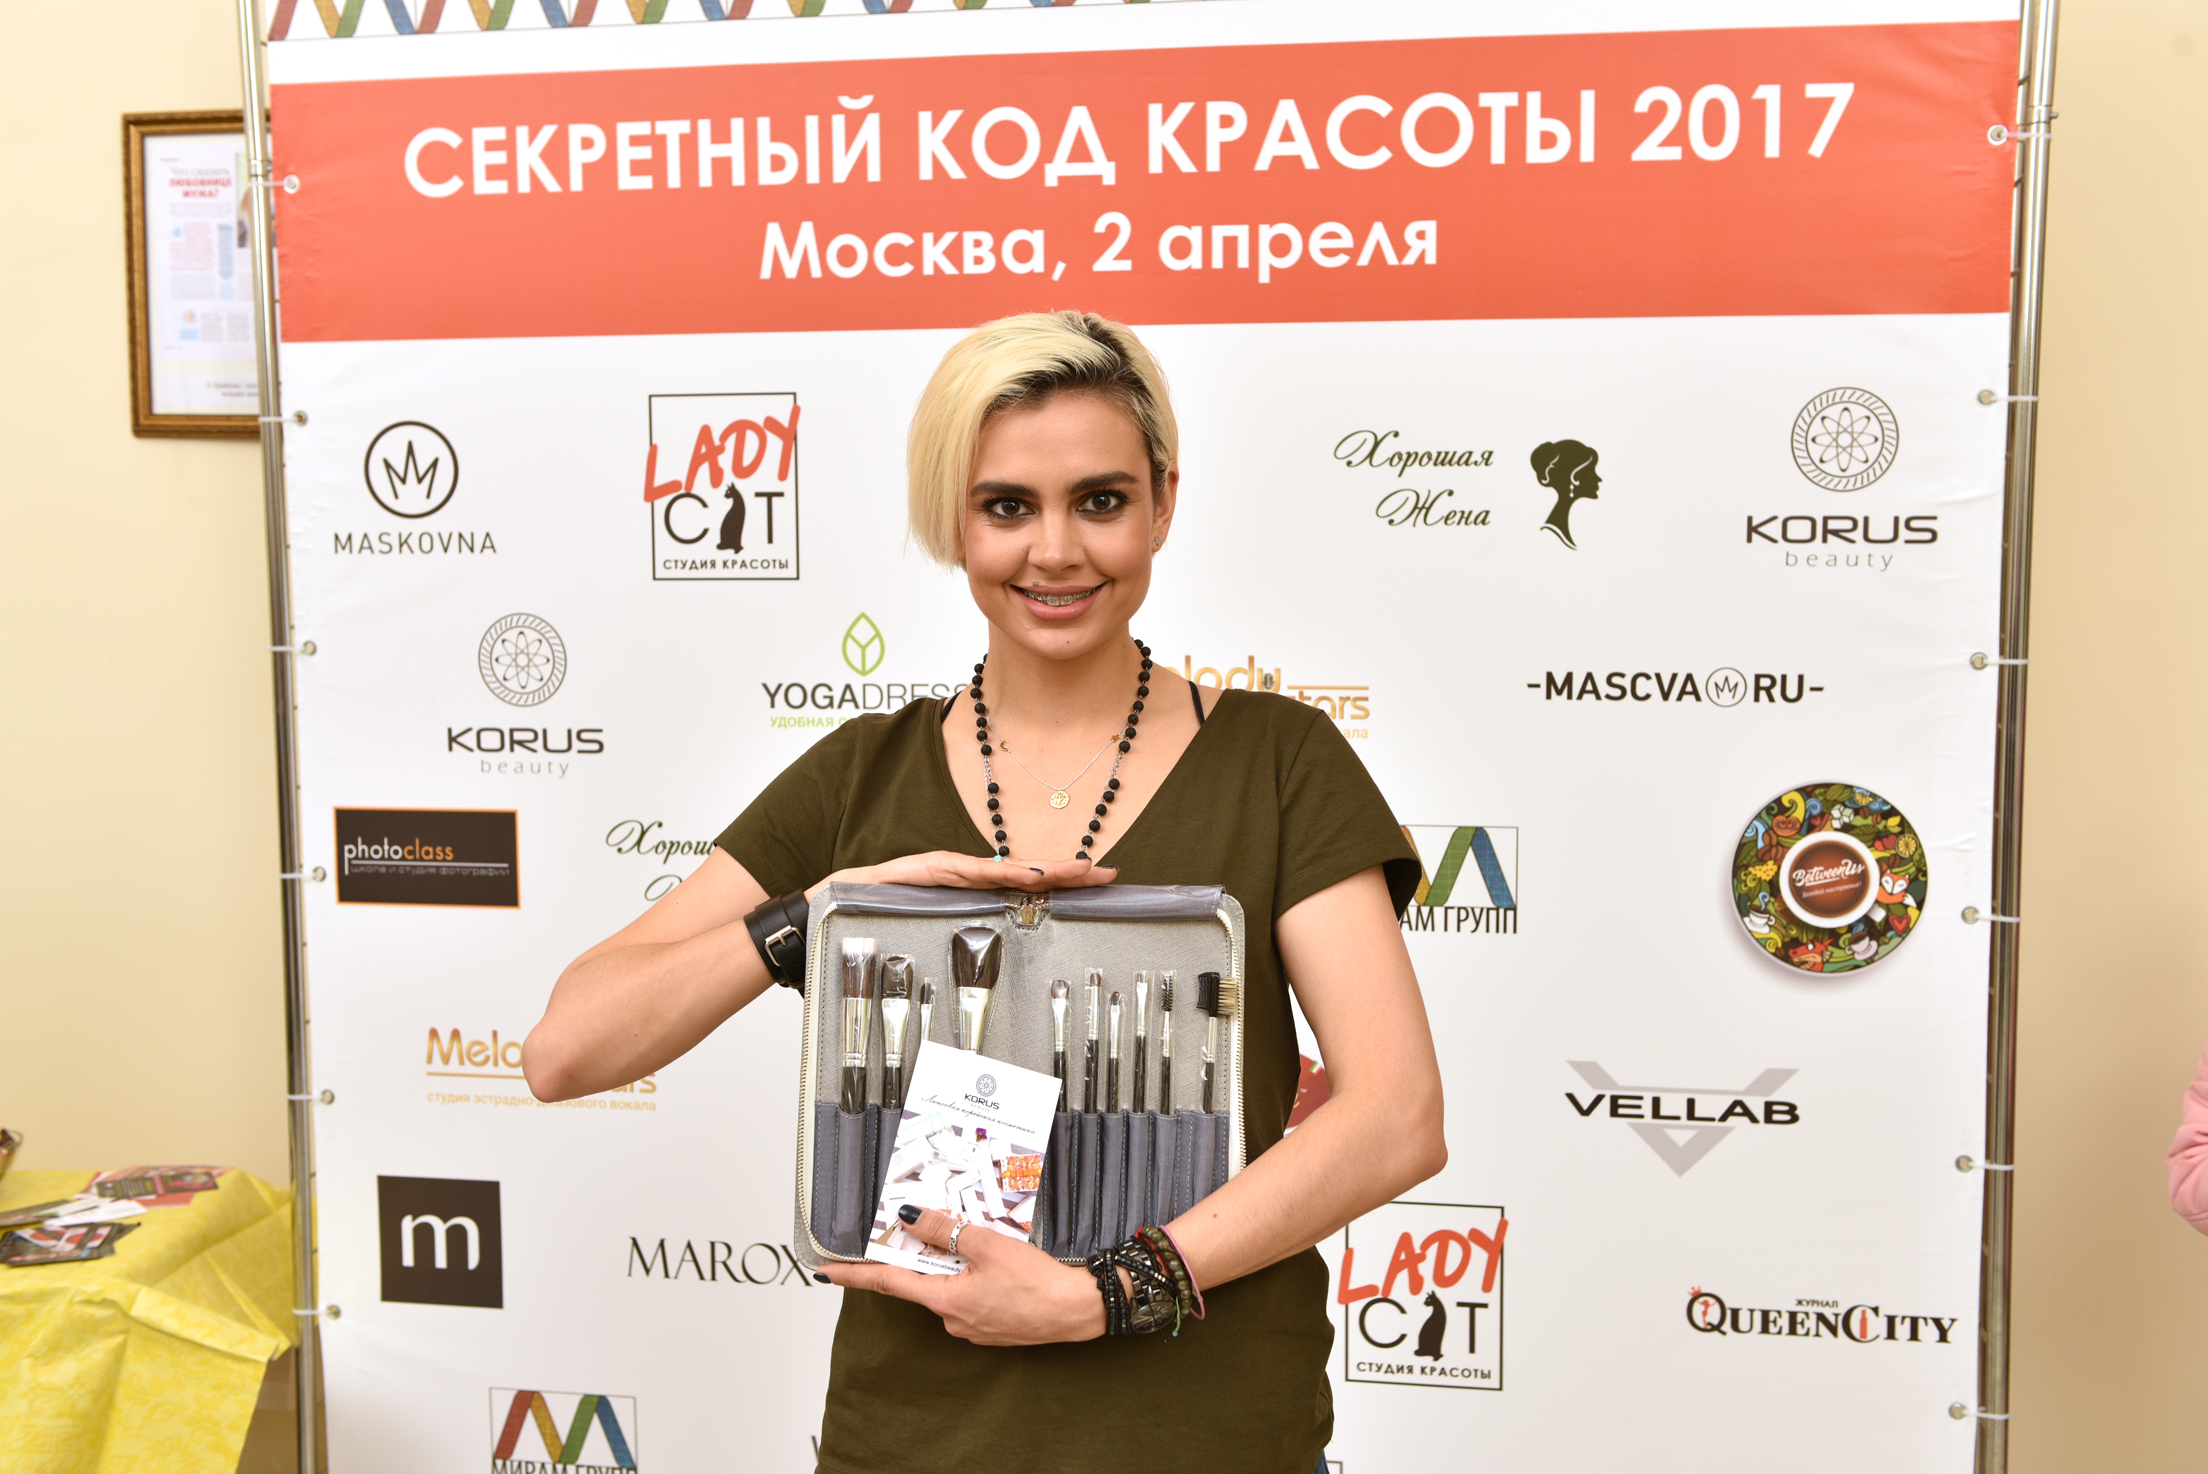 Юлия Яковлева, звездный визажист и стилист, рассказала об актуальных тенденциях в макияже весна-лето 2017